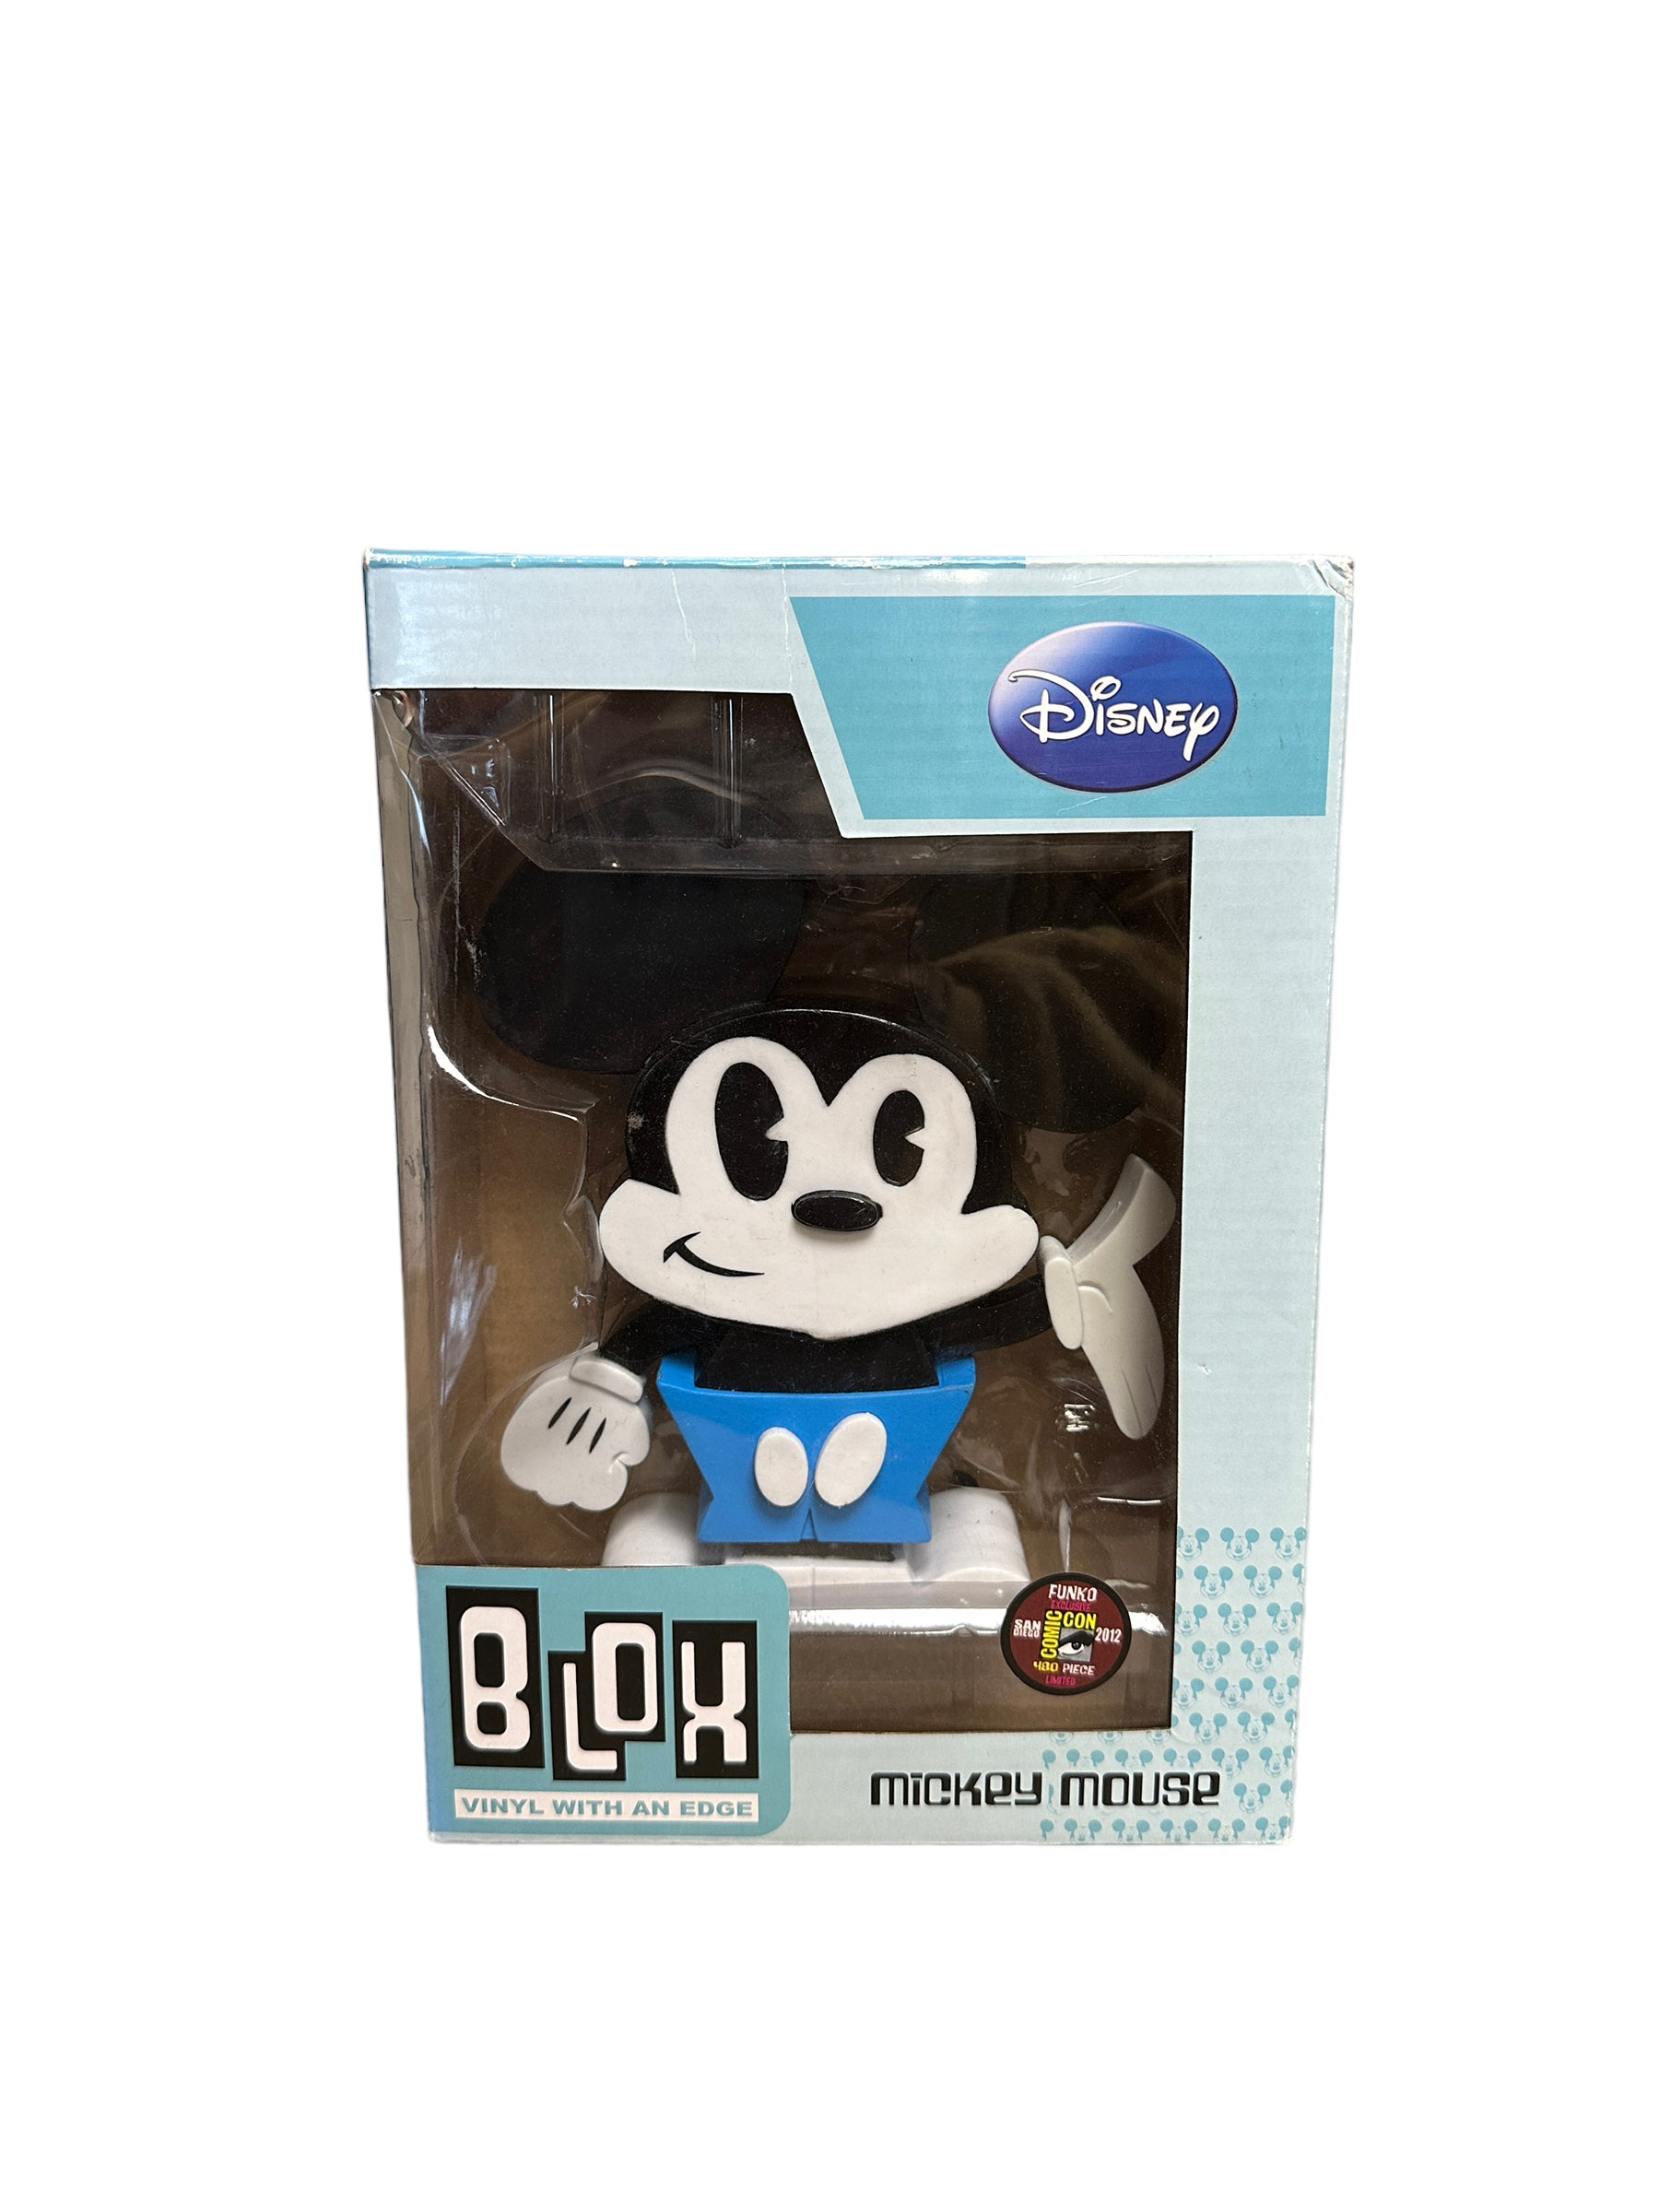 Mickey Mouse Funko Blox Vinyl Figure! - Disney - SDCC 2012 Exclusive LE480 Pcs - Condition 7/10